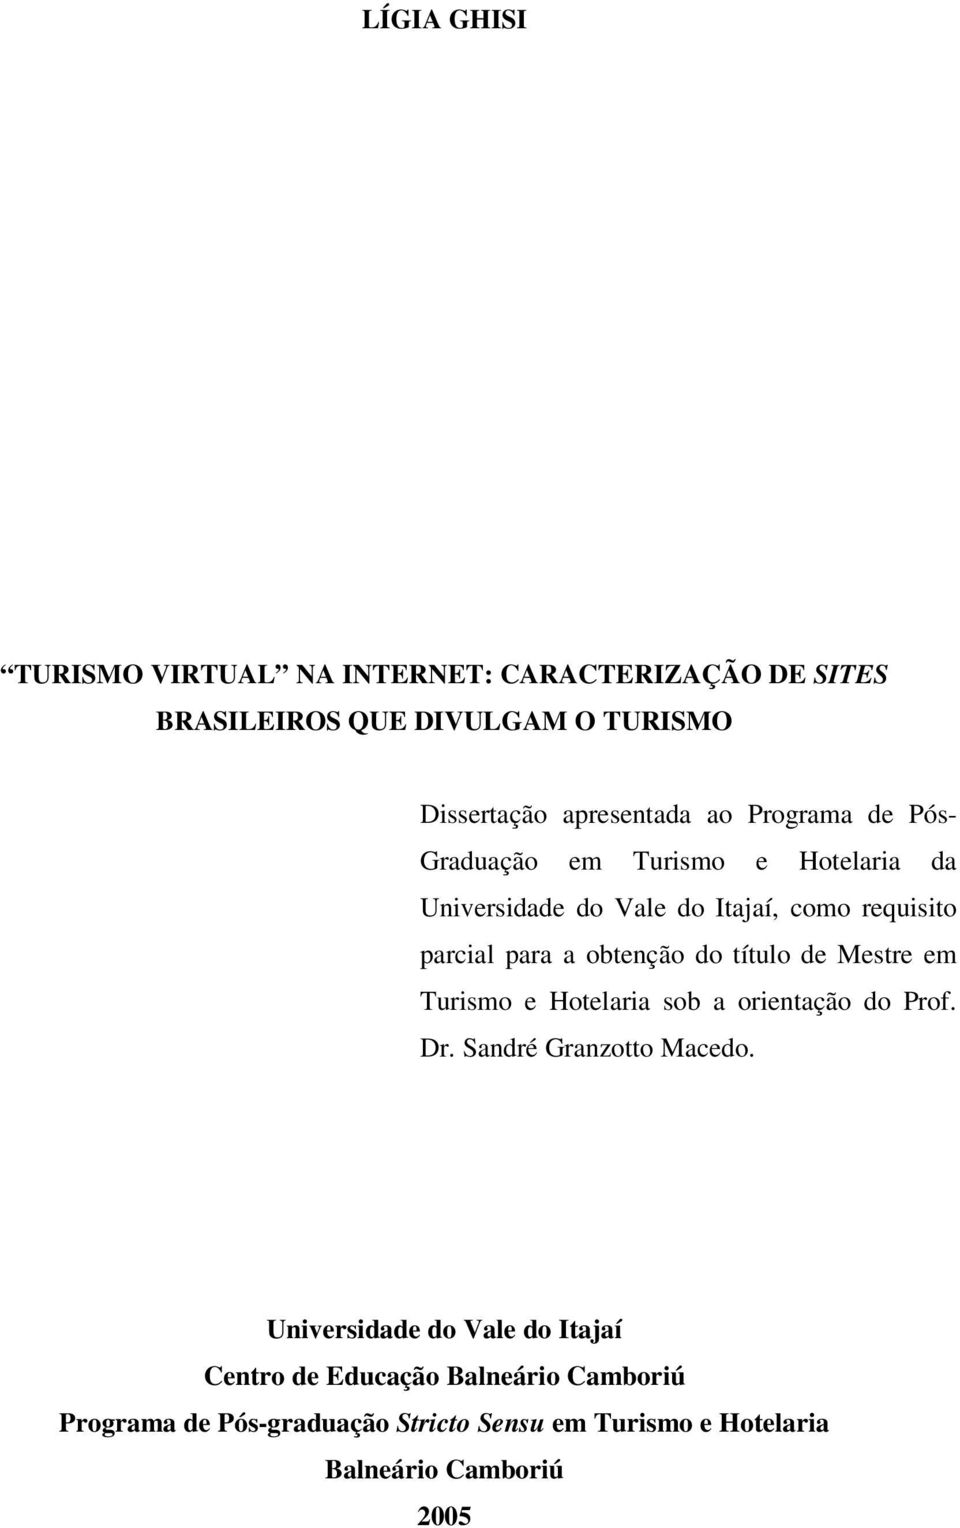 obtenção do título de Mestre em Turismo e Hotelaria sob a orientação do Prof. Dr. Sandré Granzotto Macedo.